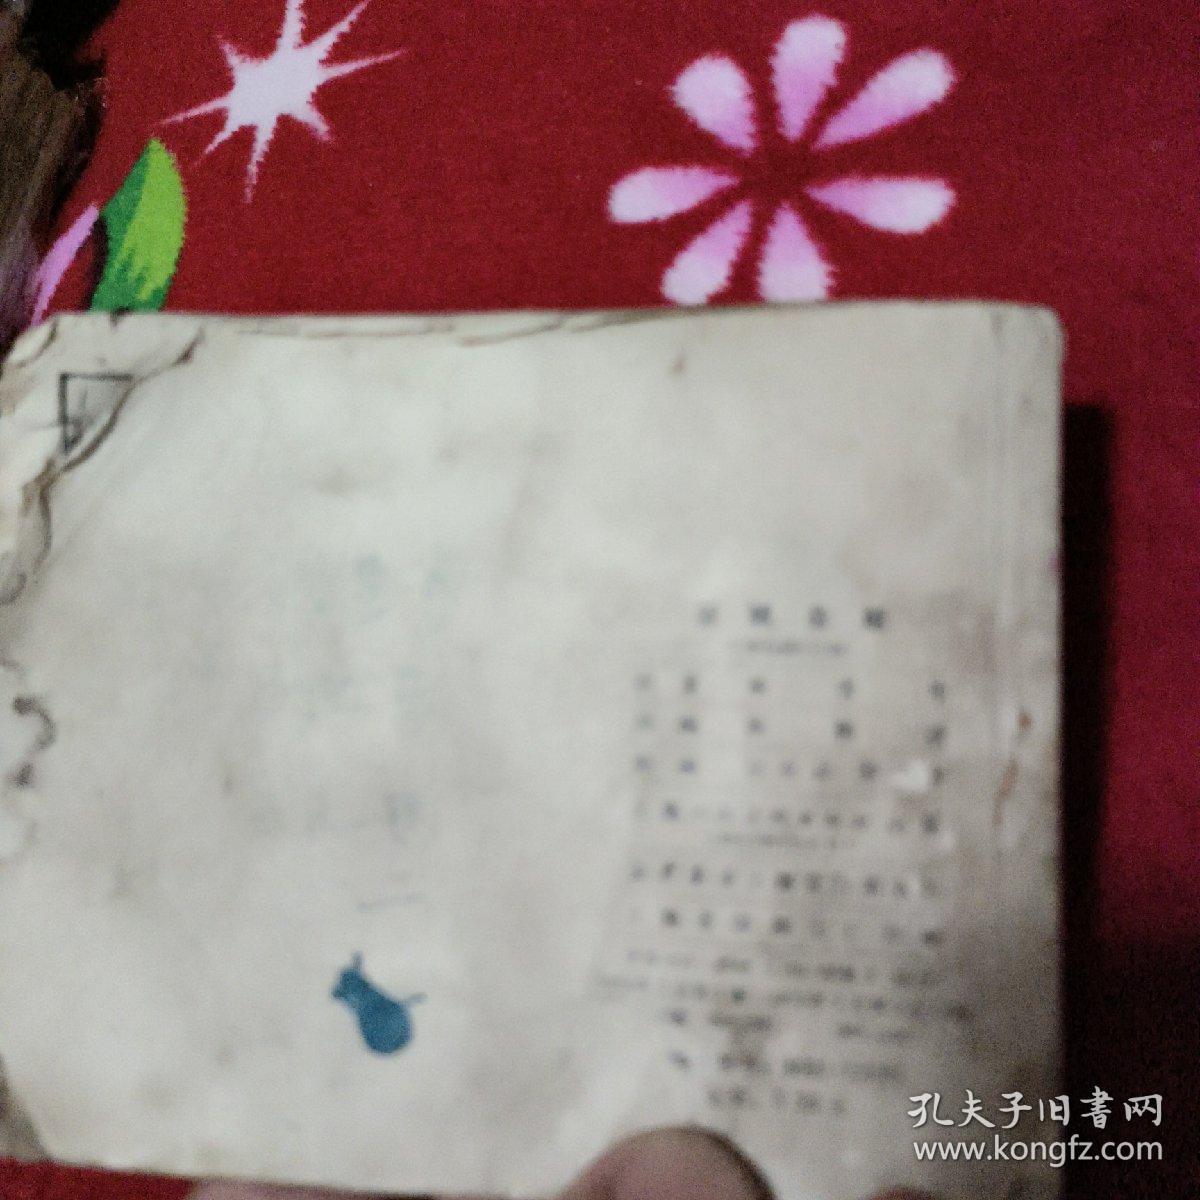 李自成连环画之4：《古城会献》上海人民美术出版社